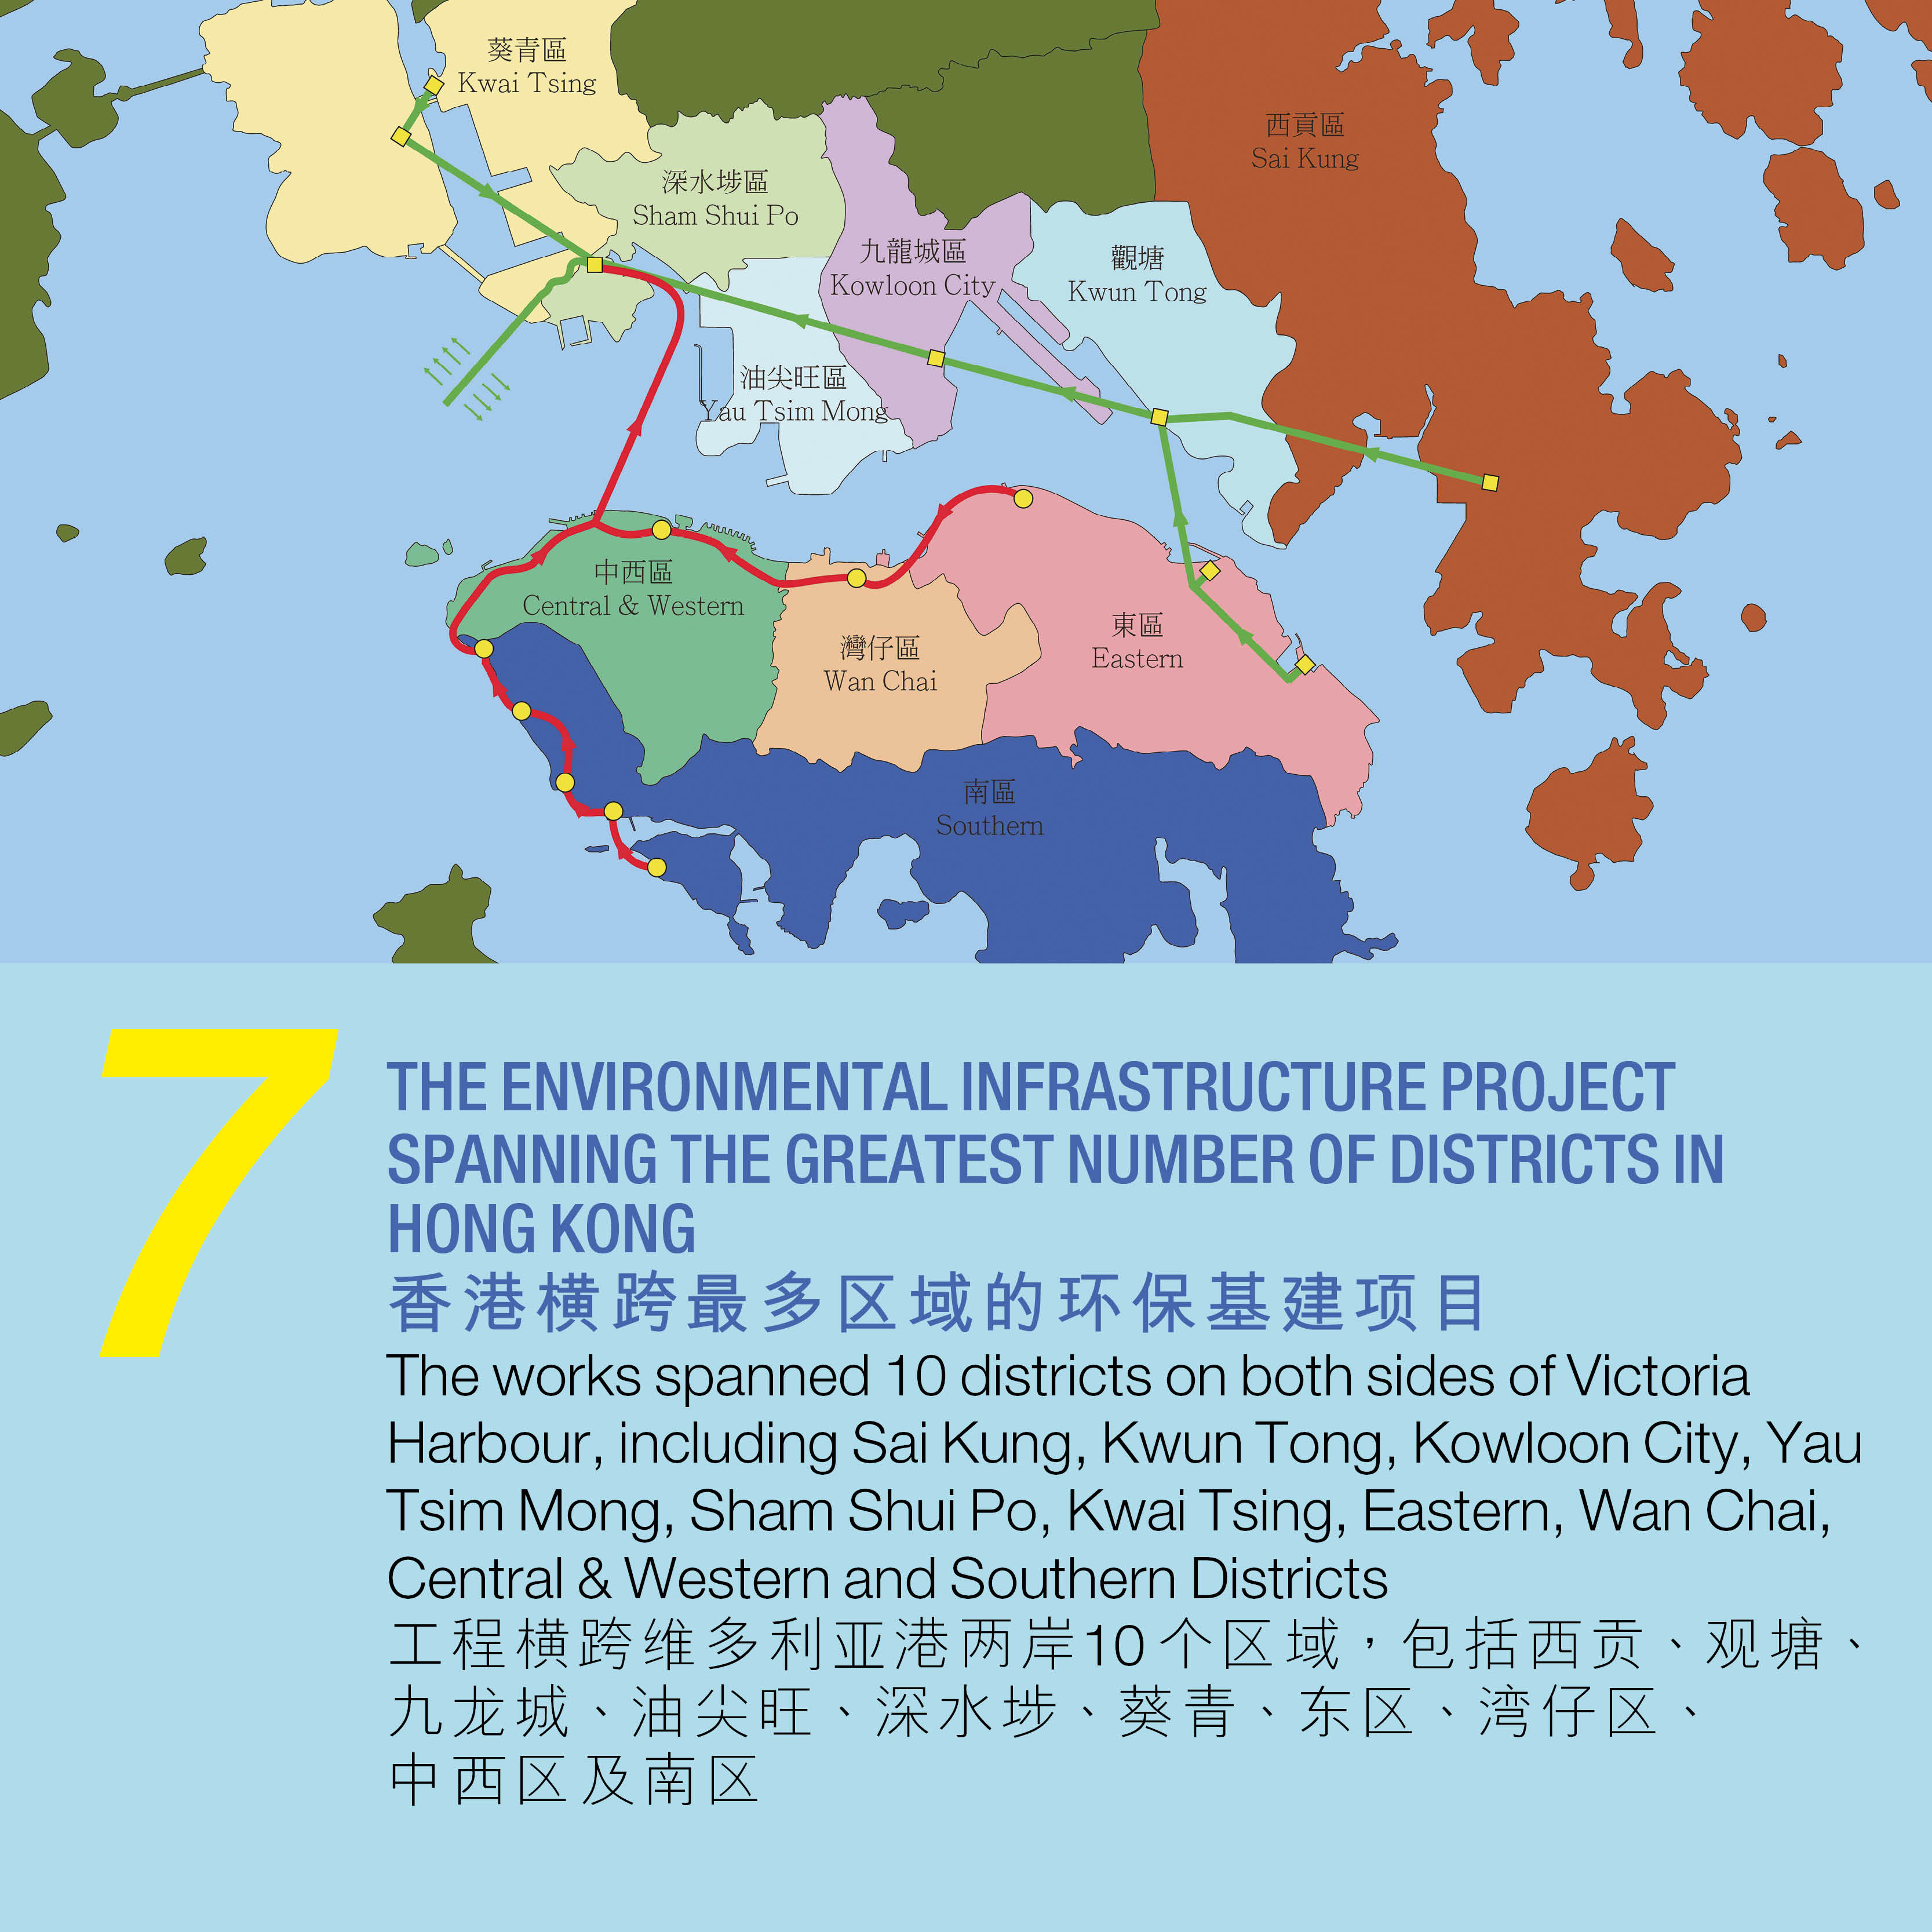 7. 香港横跨最多区域的环保基建项目 工程横跨维多利亚港两岸10 个区域，包括西贡、观塘、 九龙城、油尖旺、深水埗、葵青、东区、湾仔区、 中西区及南区